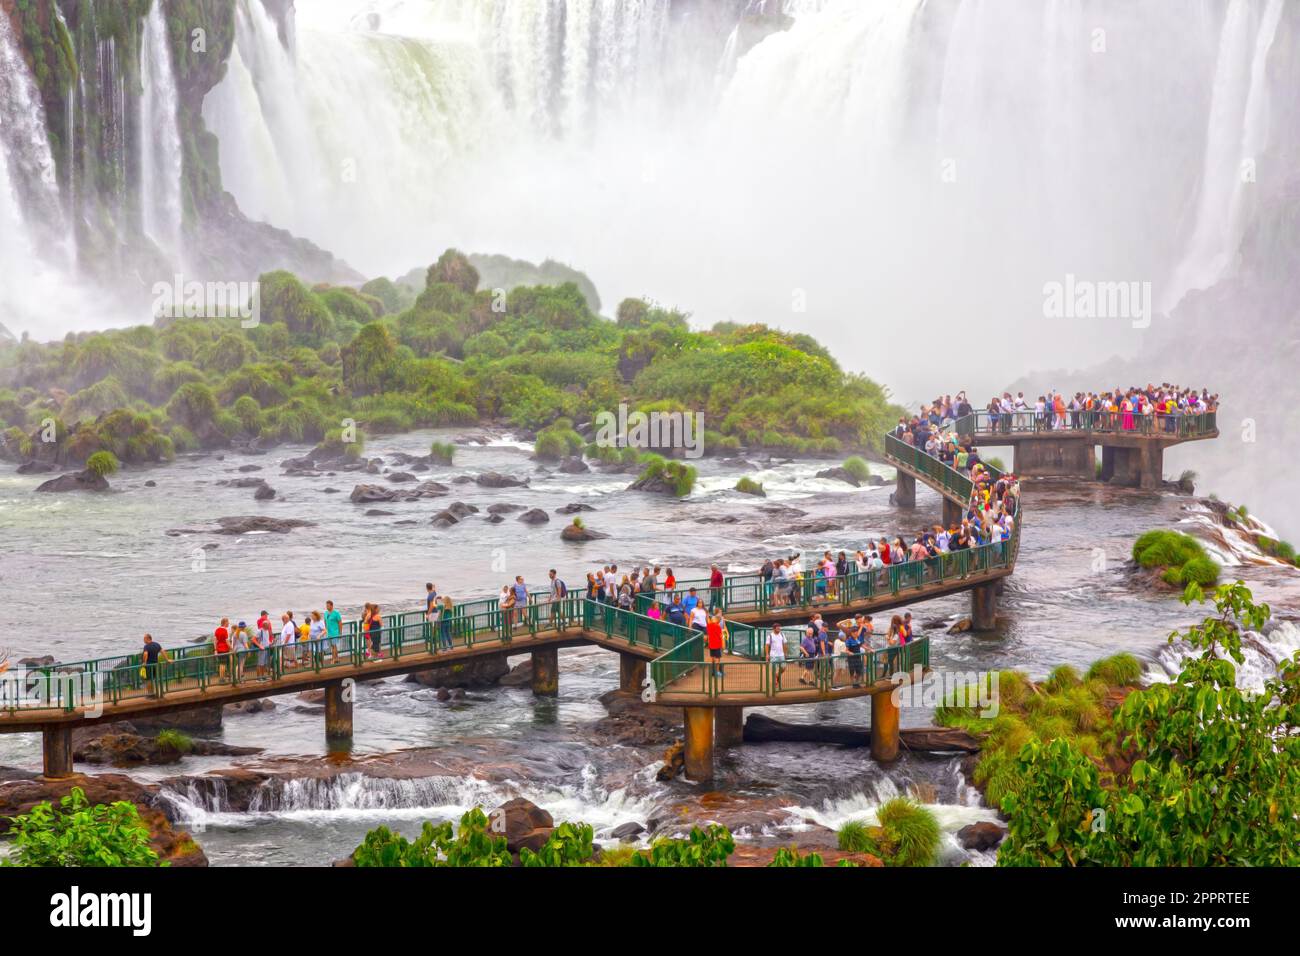 Touristen auf einem Hängebahn bewundern den Blick auf Garganta Del Diablo oder Devil's Throat, die berühmte riesige U-förmige Kaskade in den weltberühmten Iguazu Falls Stockfoto